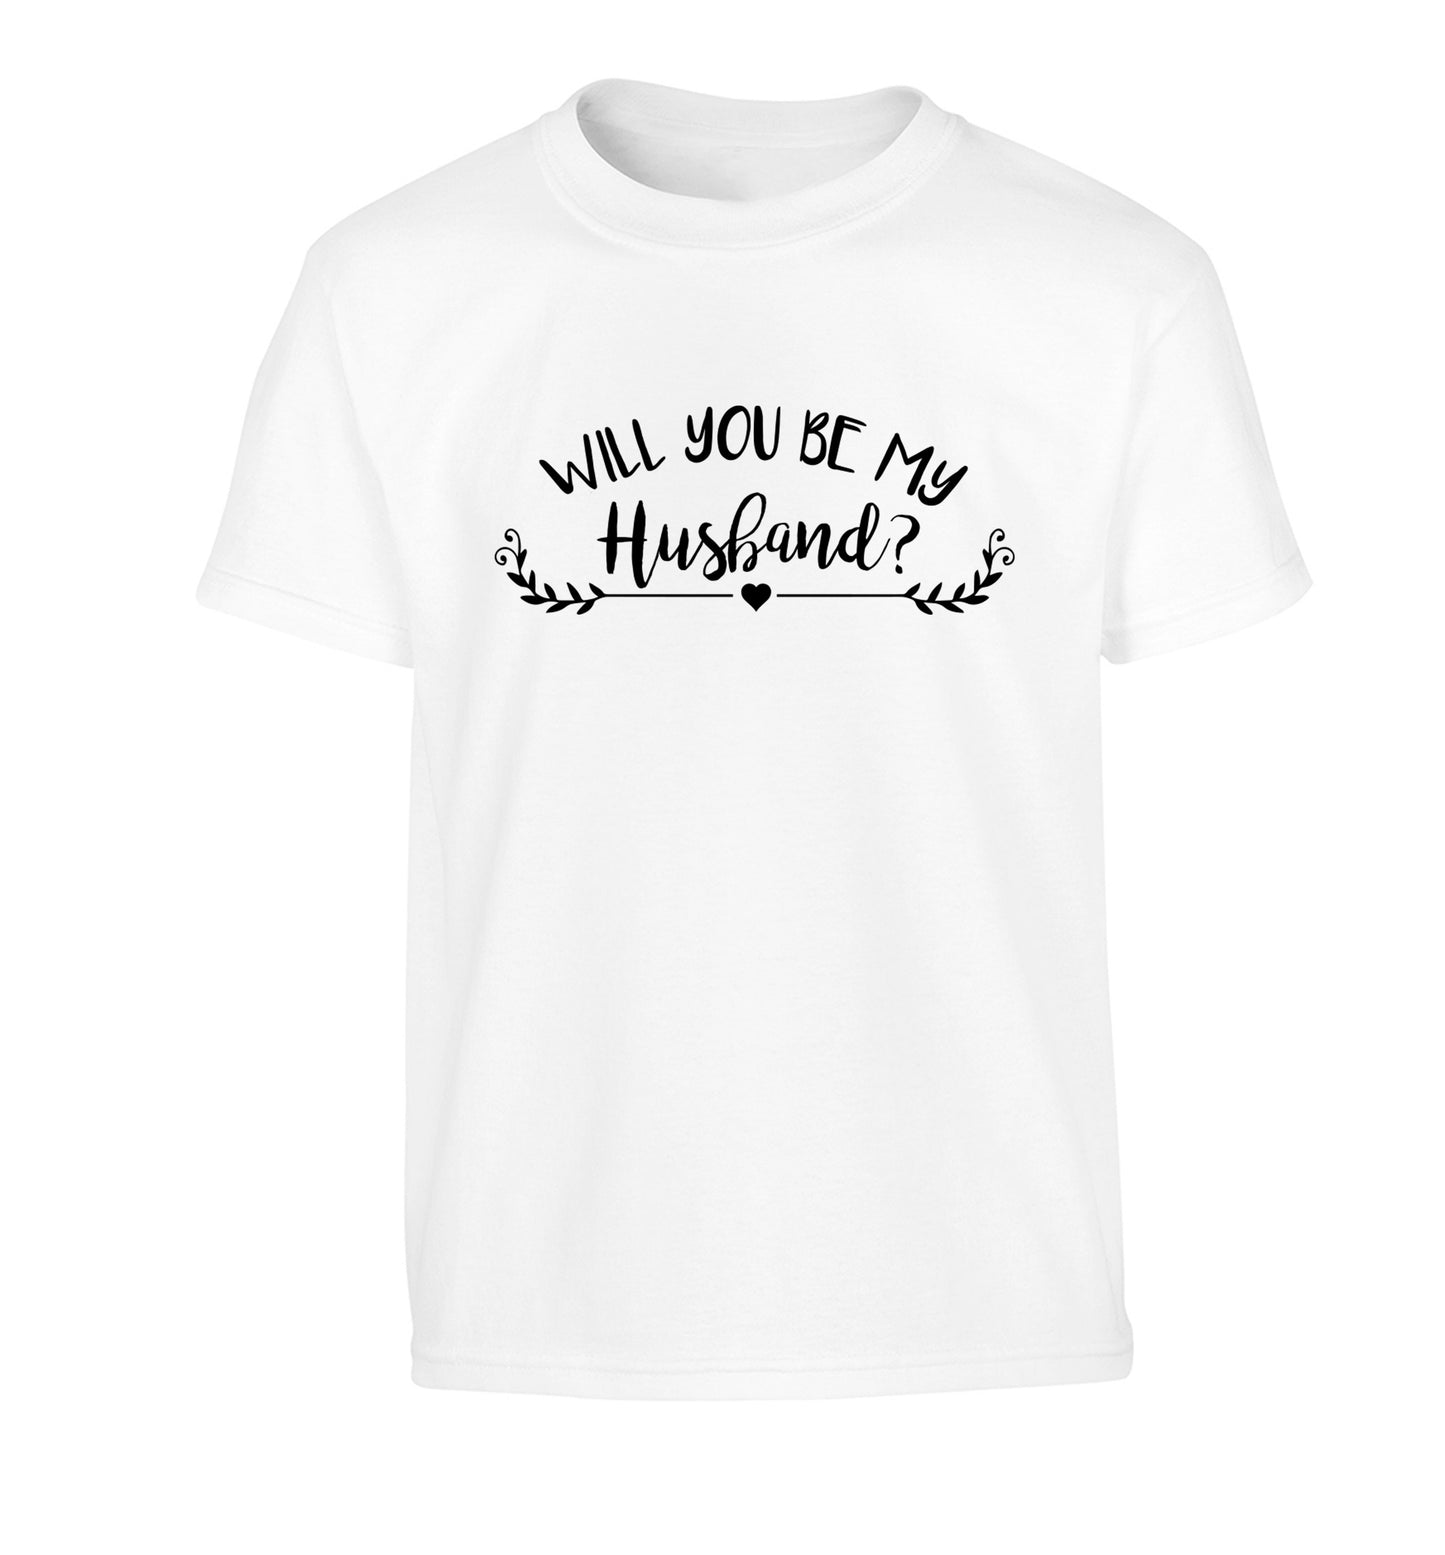 Will you be my husband? Children's white Tshirt 12-14 Years